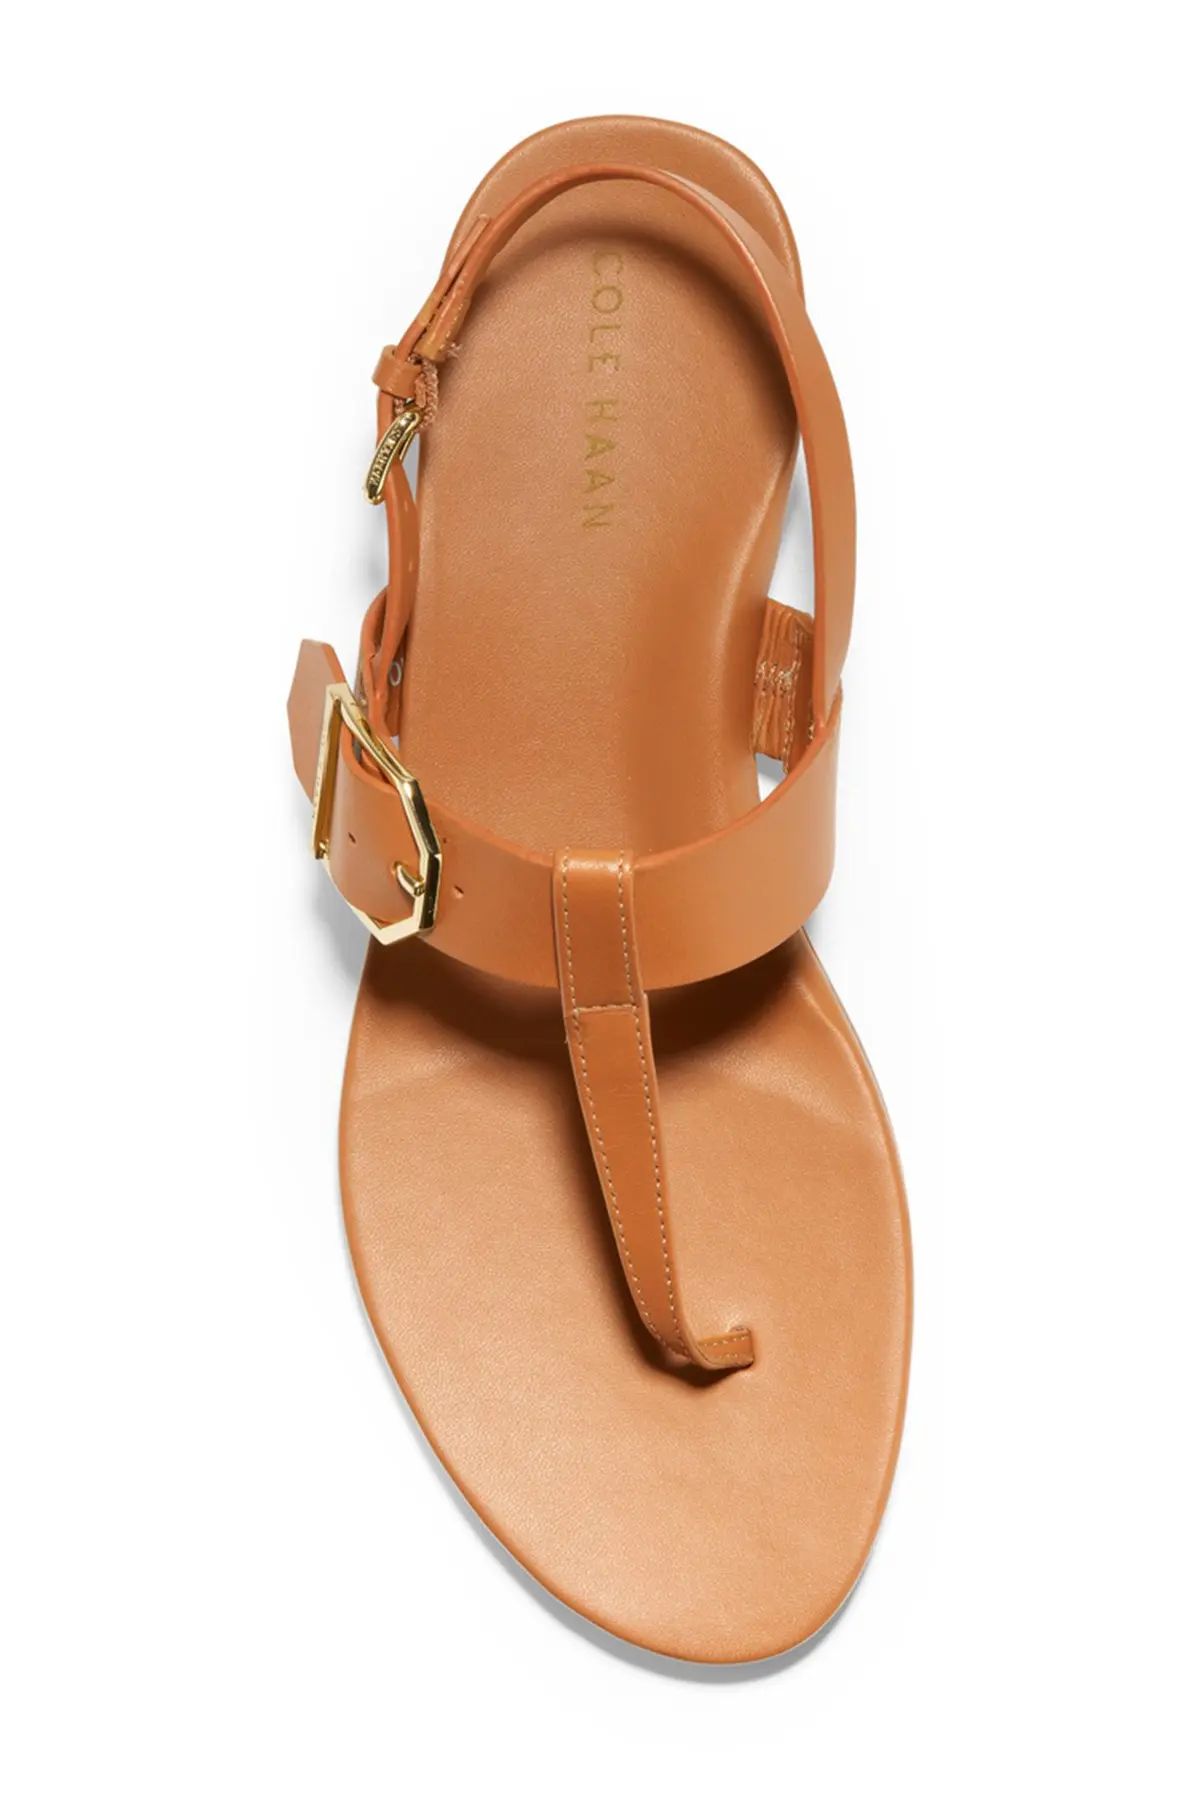 Great comfy summer sandal | Nordstrom Rack